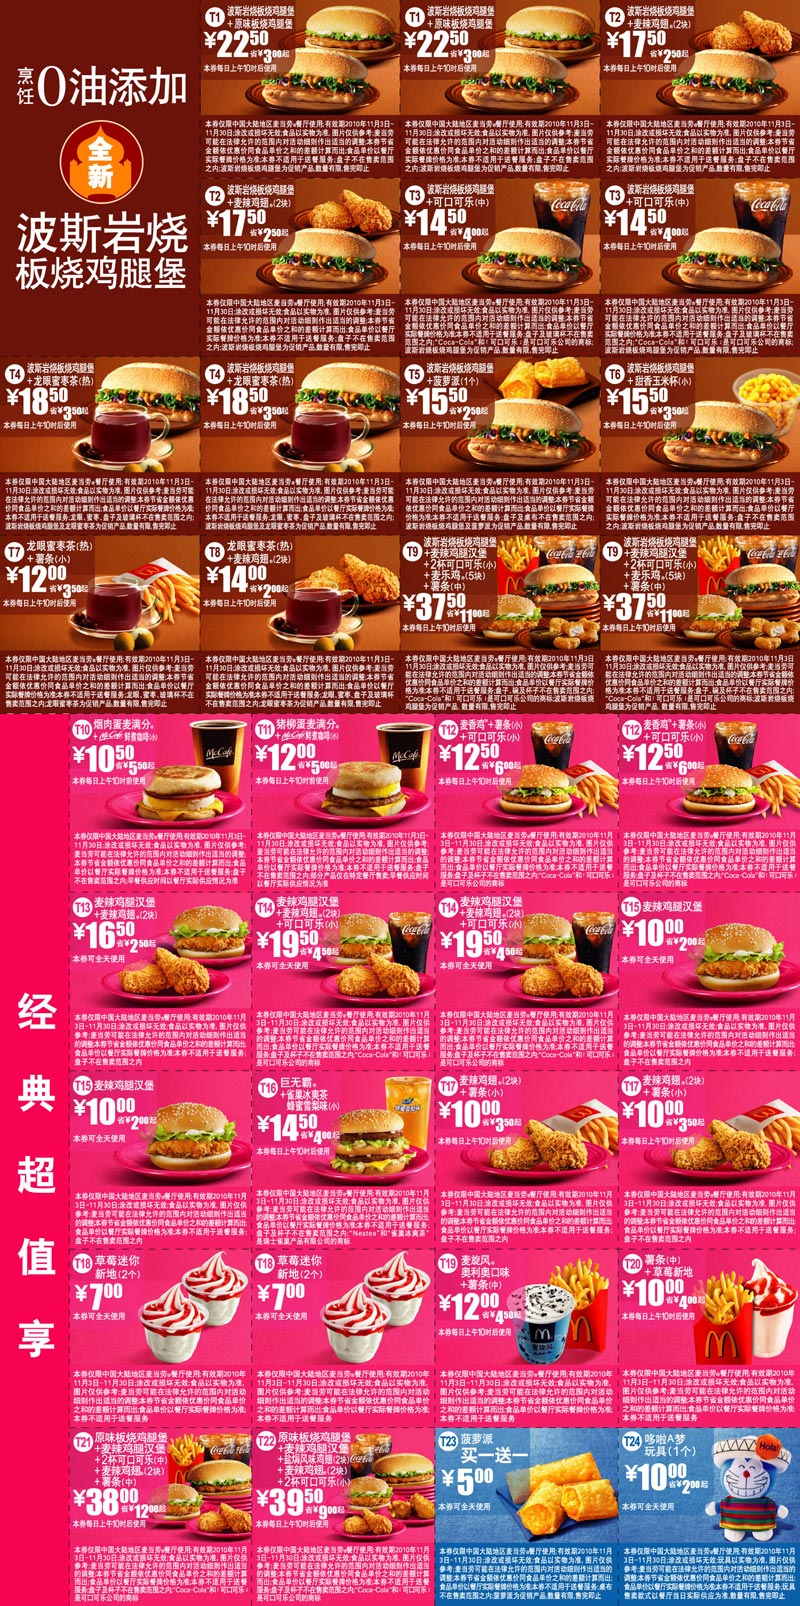 优惠券图片:麦当劳电子优惠券2010年11月整张打印版本,所有优惠券打印于1张A4纸 有效期2010年11月3日-2010年11月30日